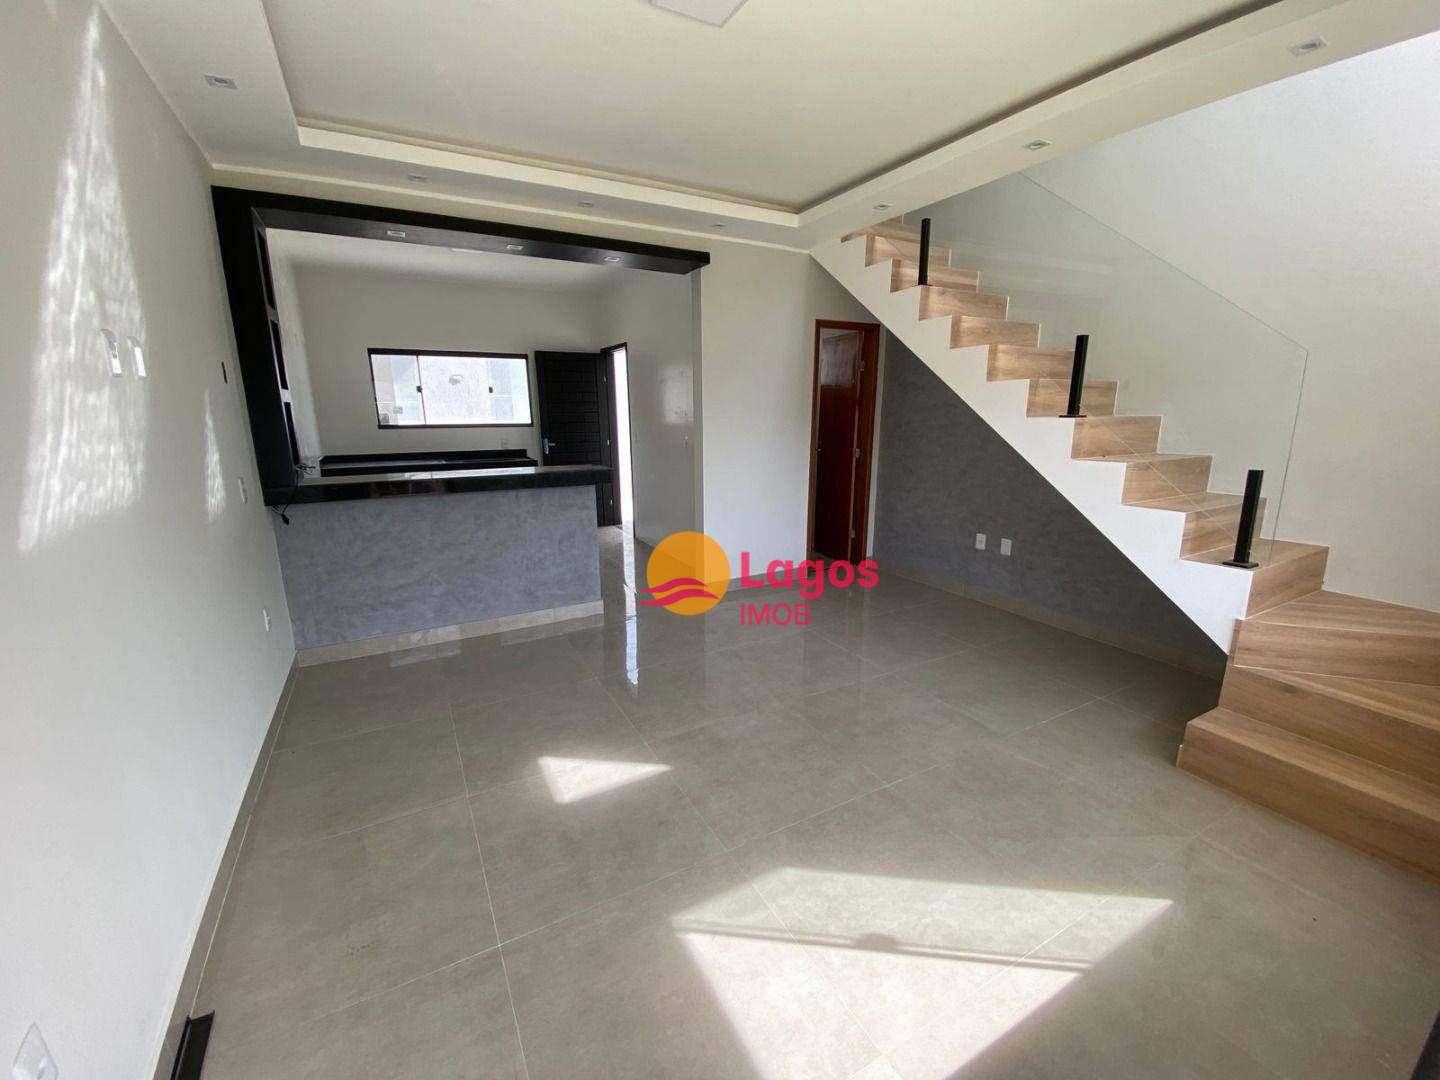 Casa em Inoã (Inoã), Maricá/RJ de 74m² 2 quartos à venda por R$ 329.000,00